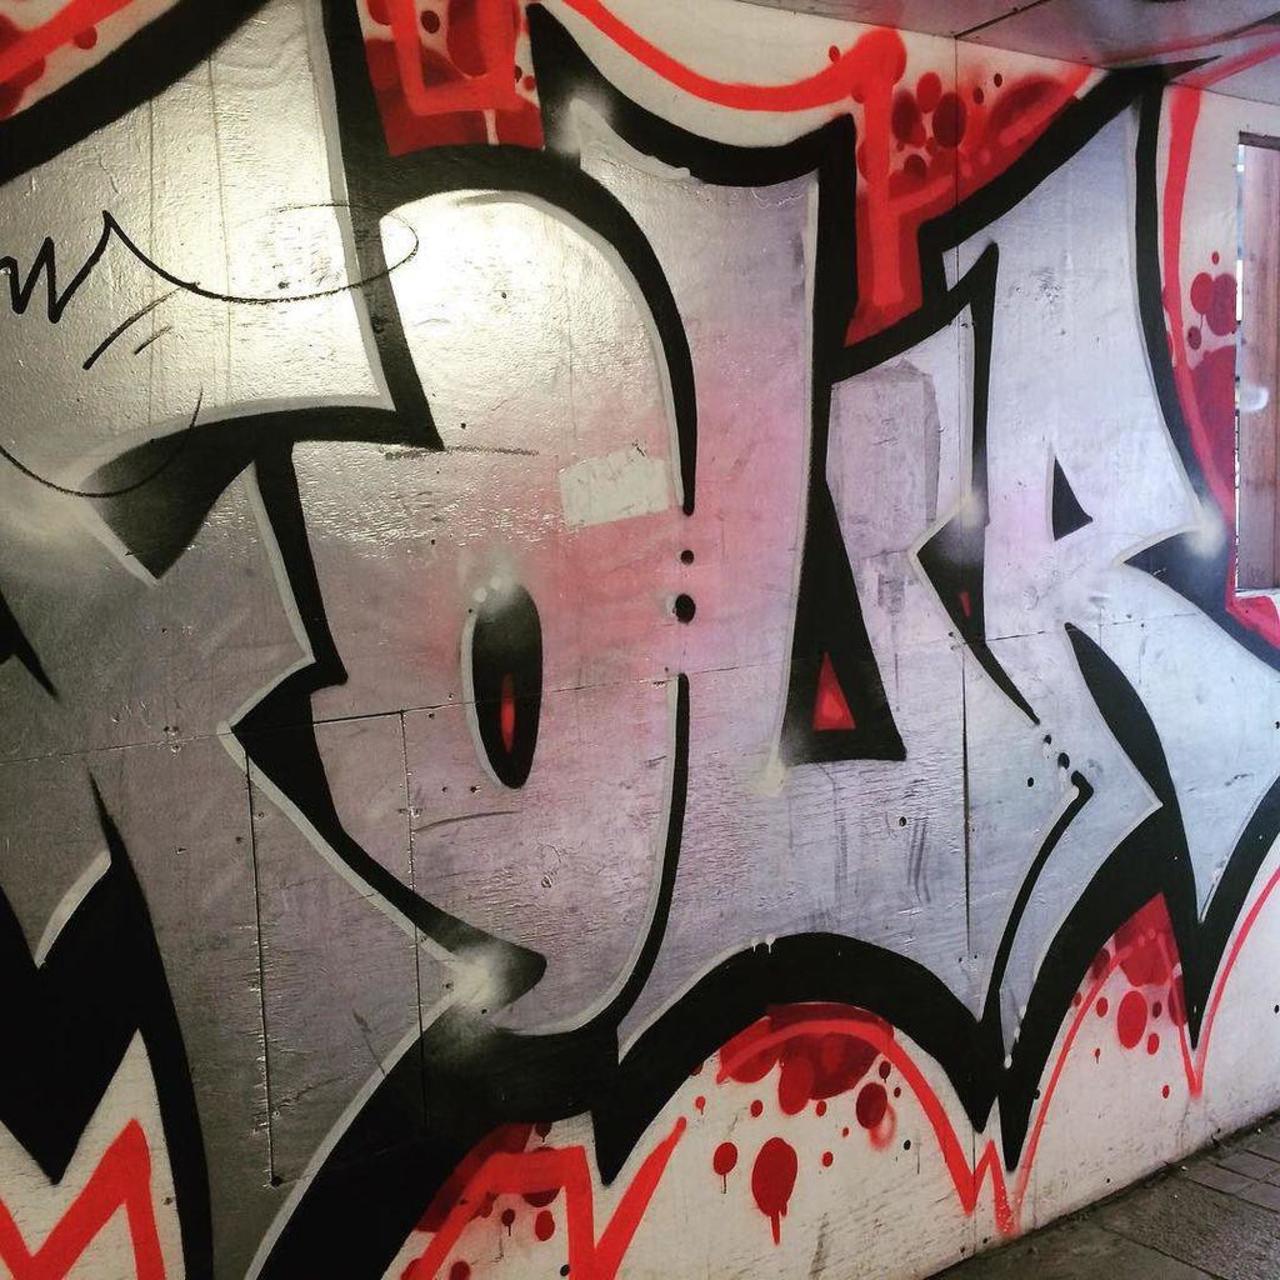 #graffitiporn  #wallporn #mural  #murales  #graffitiporn #lovestreetart #streetart #graffiti #london #loveshoreditc… http://t.co/YFiX52ktiK